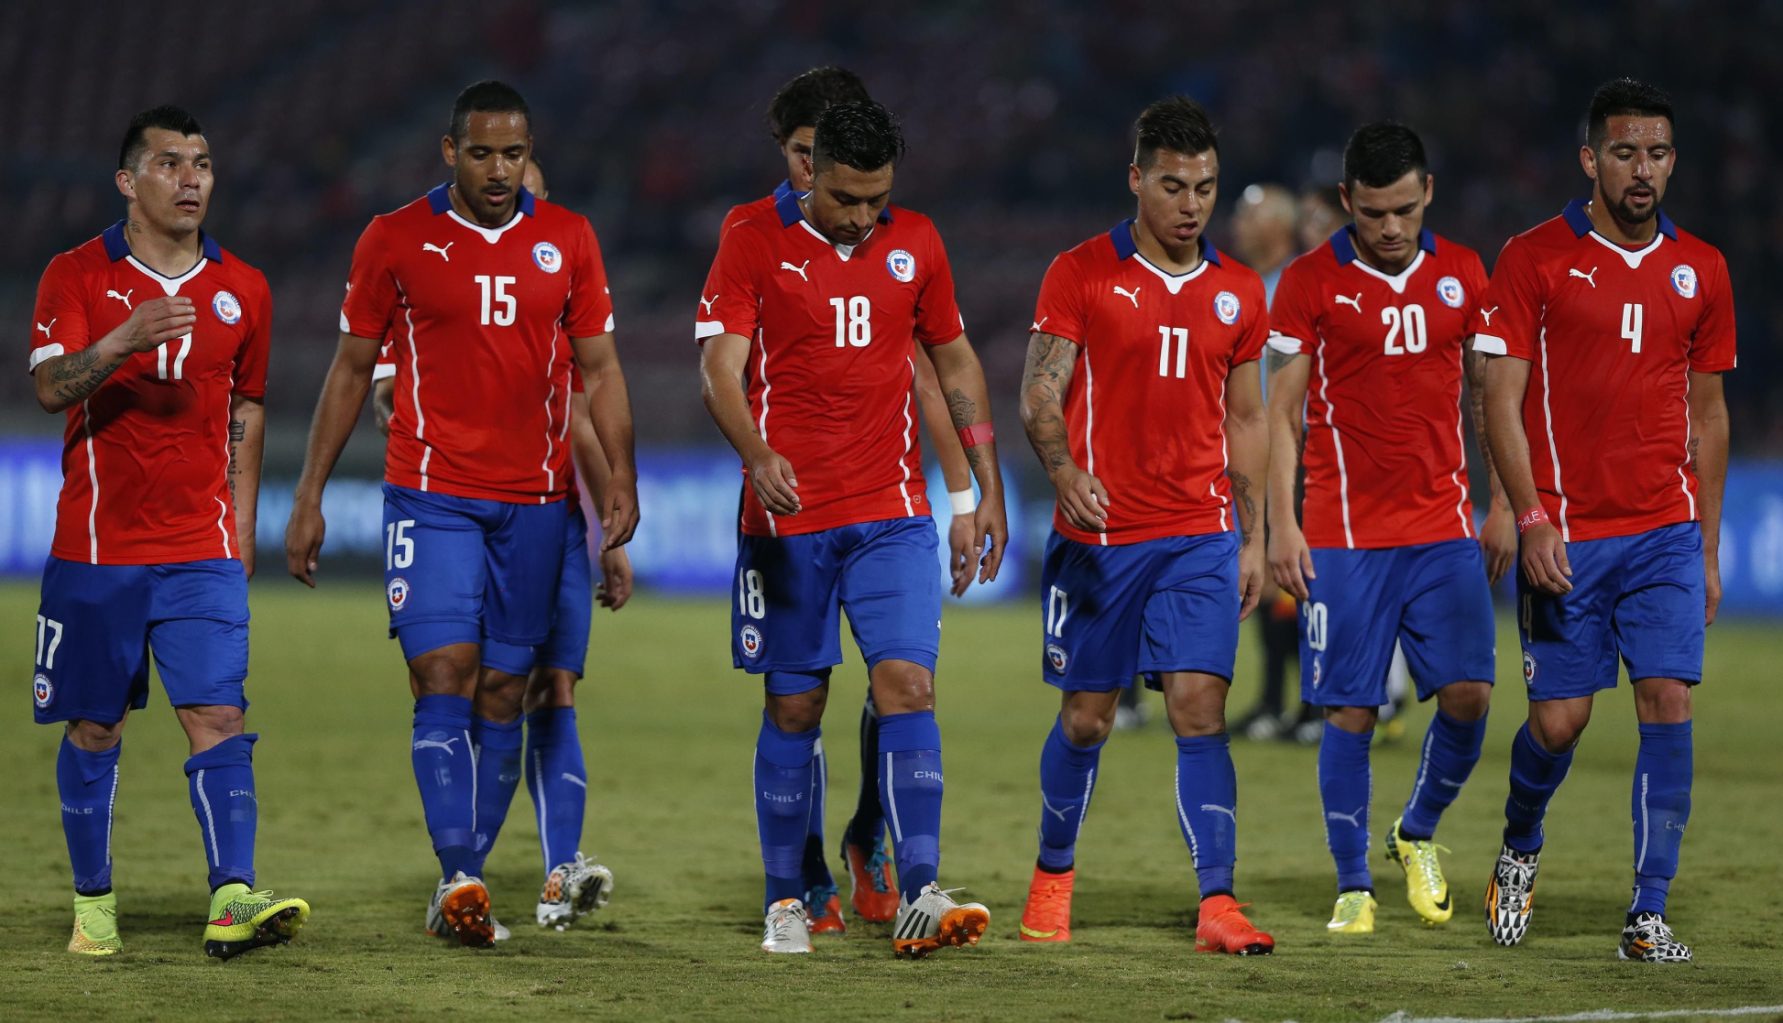 لیست نهایی تیم ملی شیلی برای جام جهانی 2014؛ ویدال به برزیل می رود